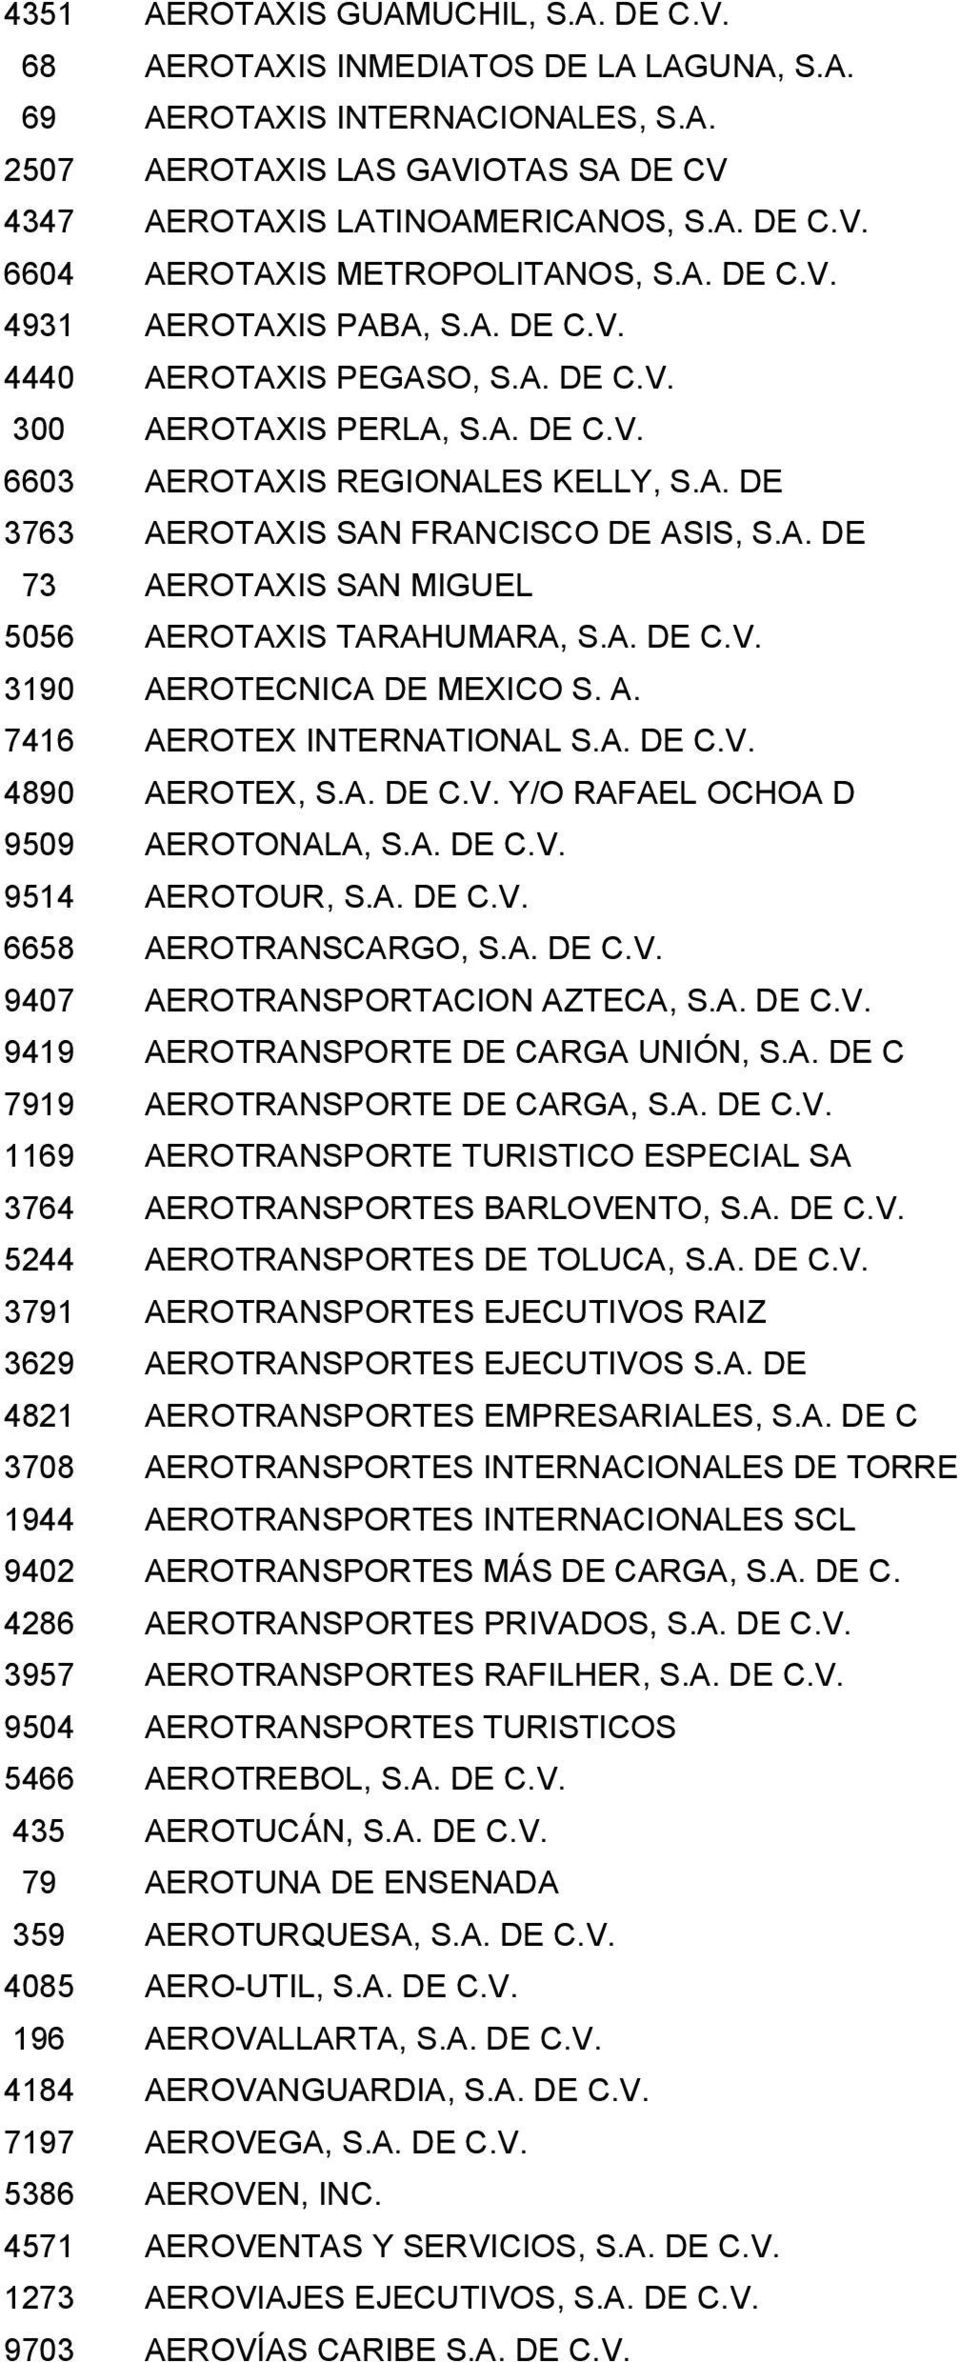 A. DE C.V. 3190 AEROTECNICA DE MEXICO S. A. 7416 AEROTEX INTERNATIONAL S.A. DE C.V. 4890 AEROTEX, S.A. DE C.V. Y/O RAFAEL OCHOA D 9509 AEROTONALA, S.A. DE C.V. 9514 AEROTOUR, S.A. DE C.V. 6658 AEROTRANSCARGO, S.